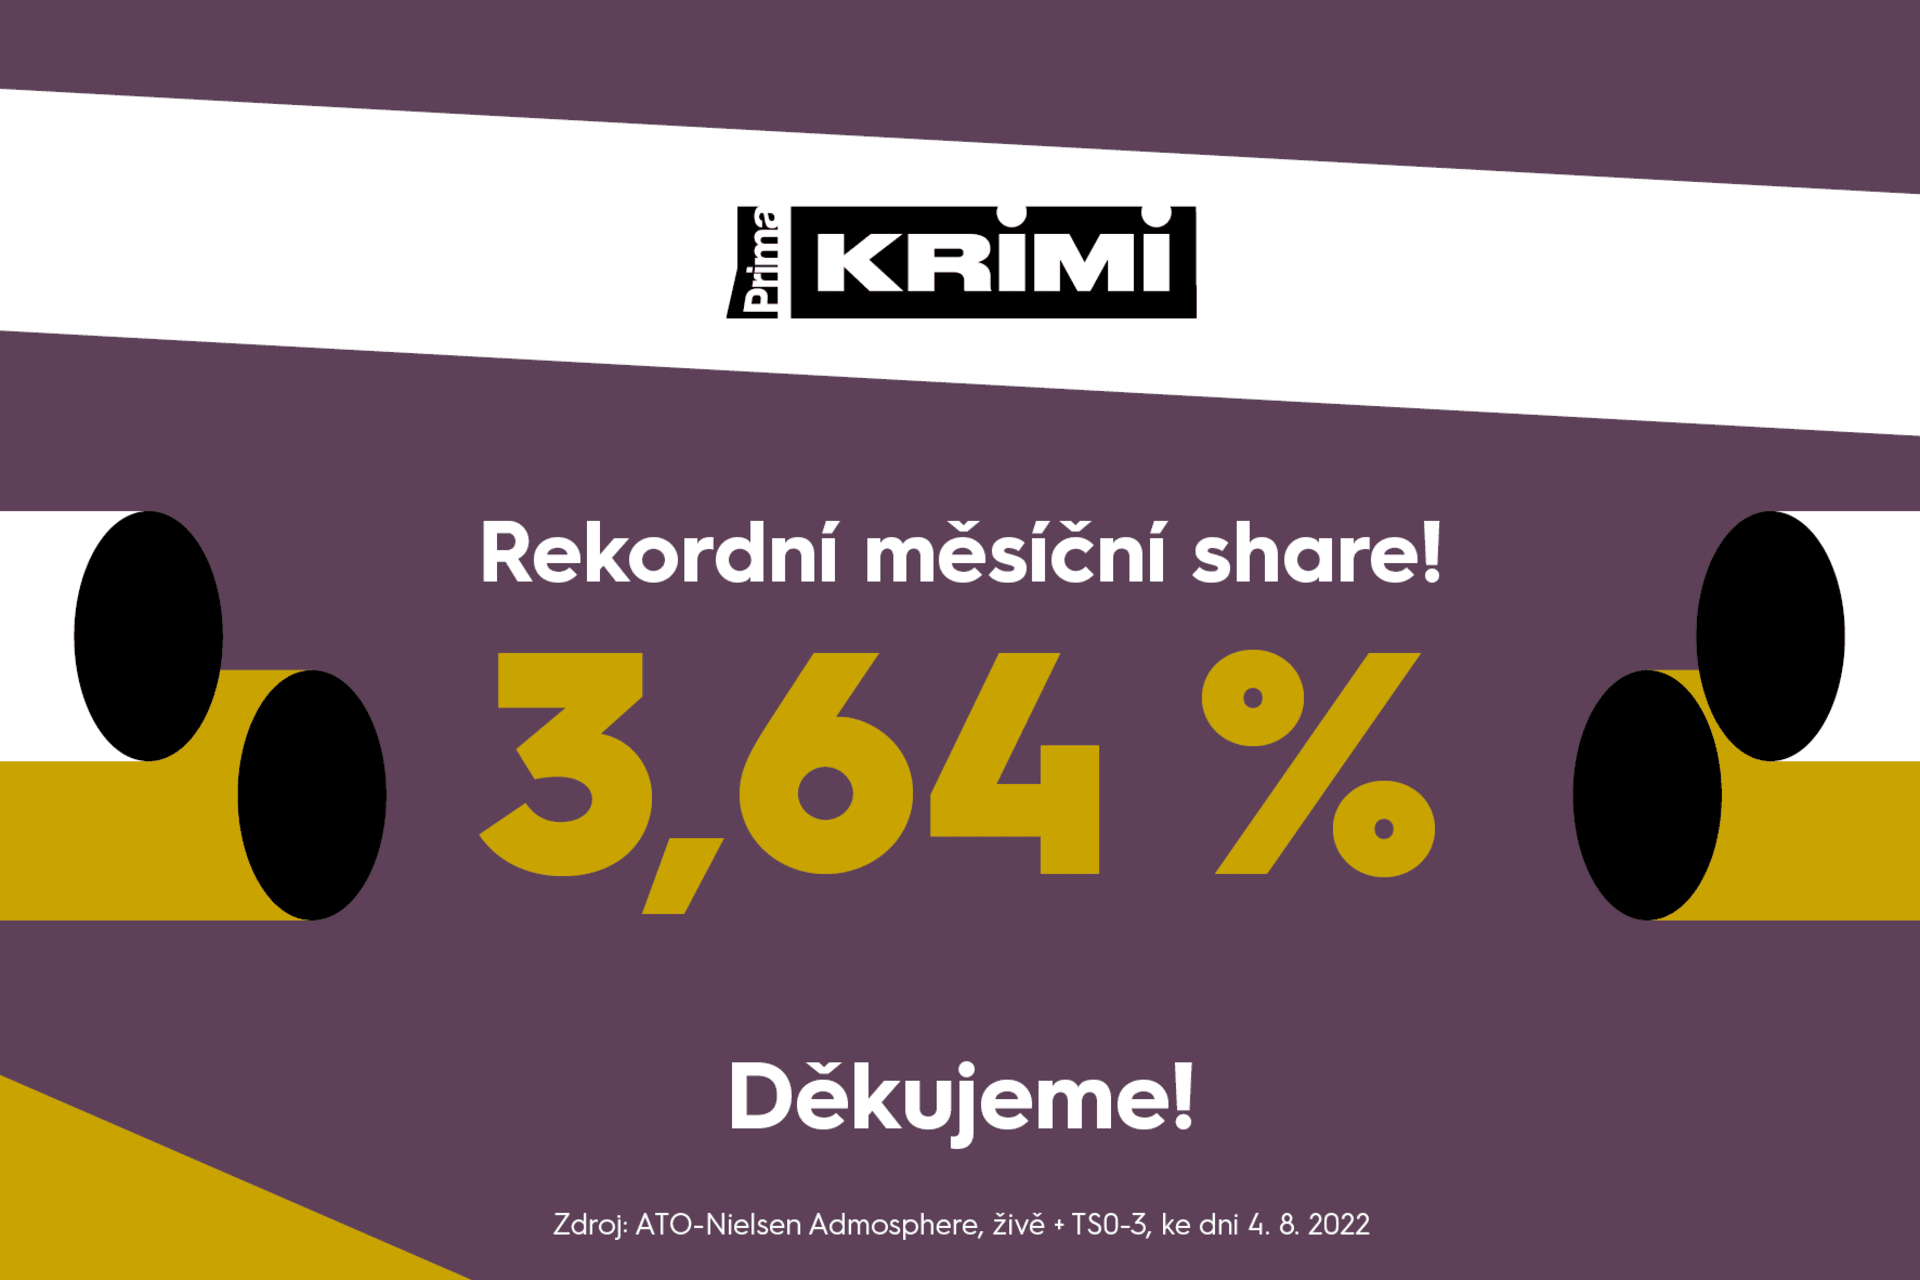 Prima KRIMI měla v červenci rekordní share 3,64 %